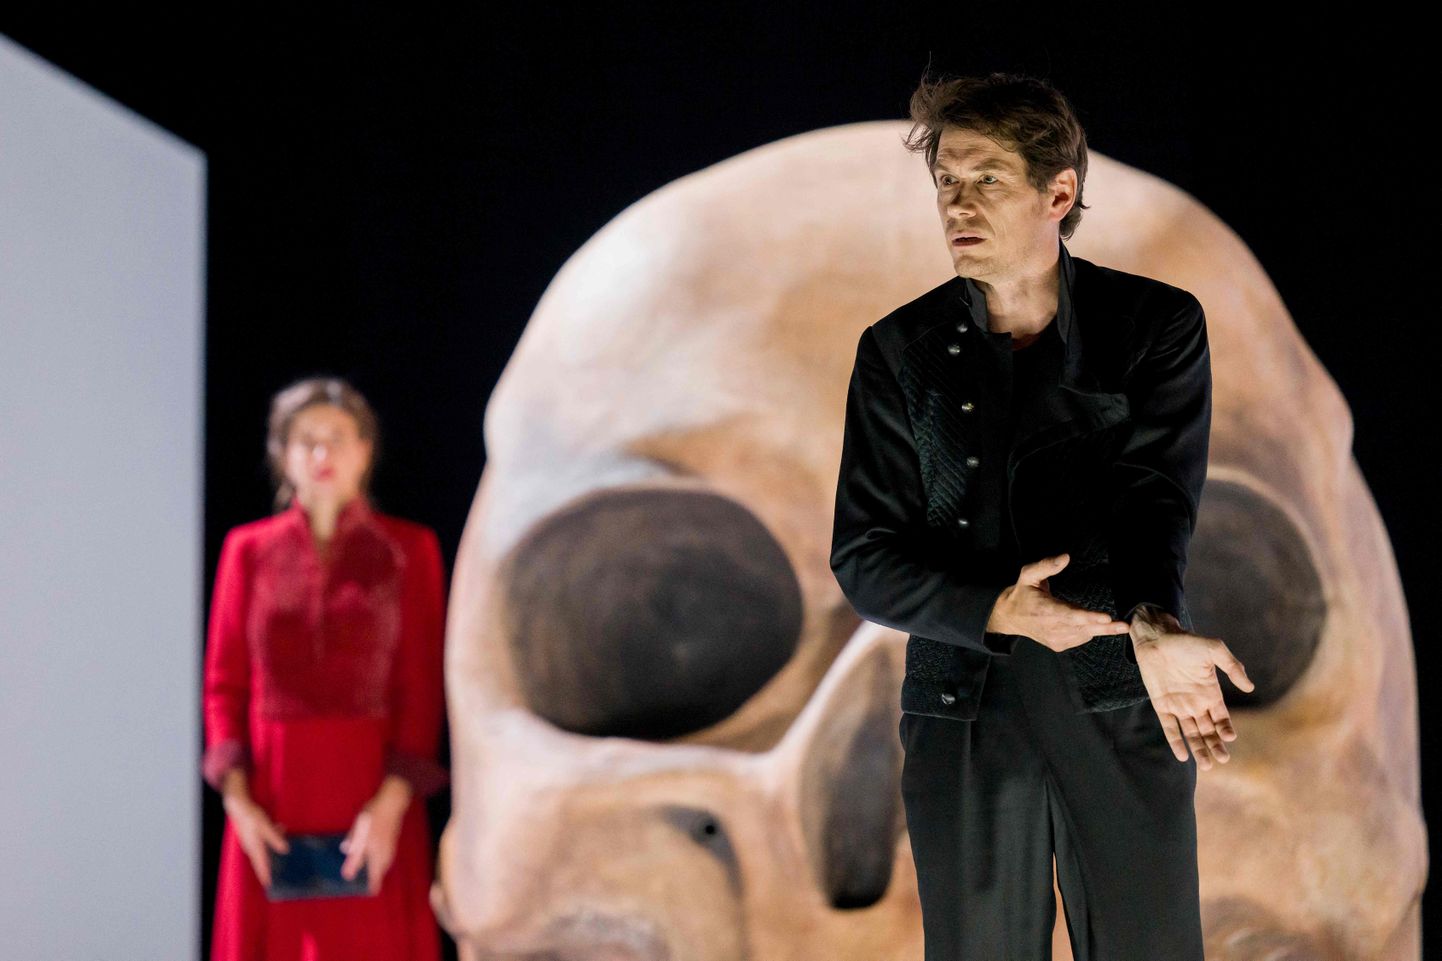 Prantsuse näitljedad William Shakespeare'i etendust "Hamlet" esitamas.